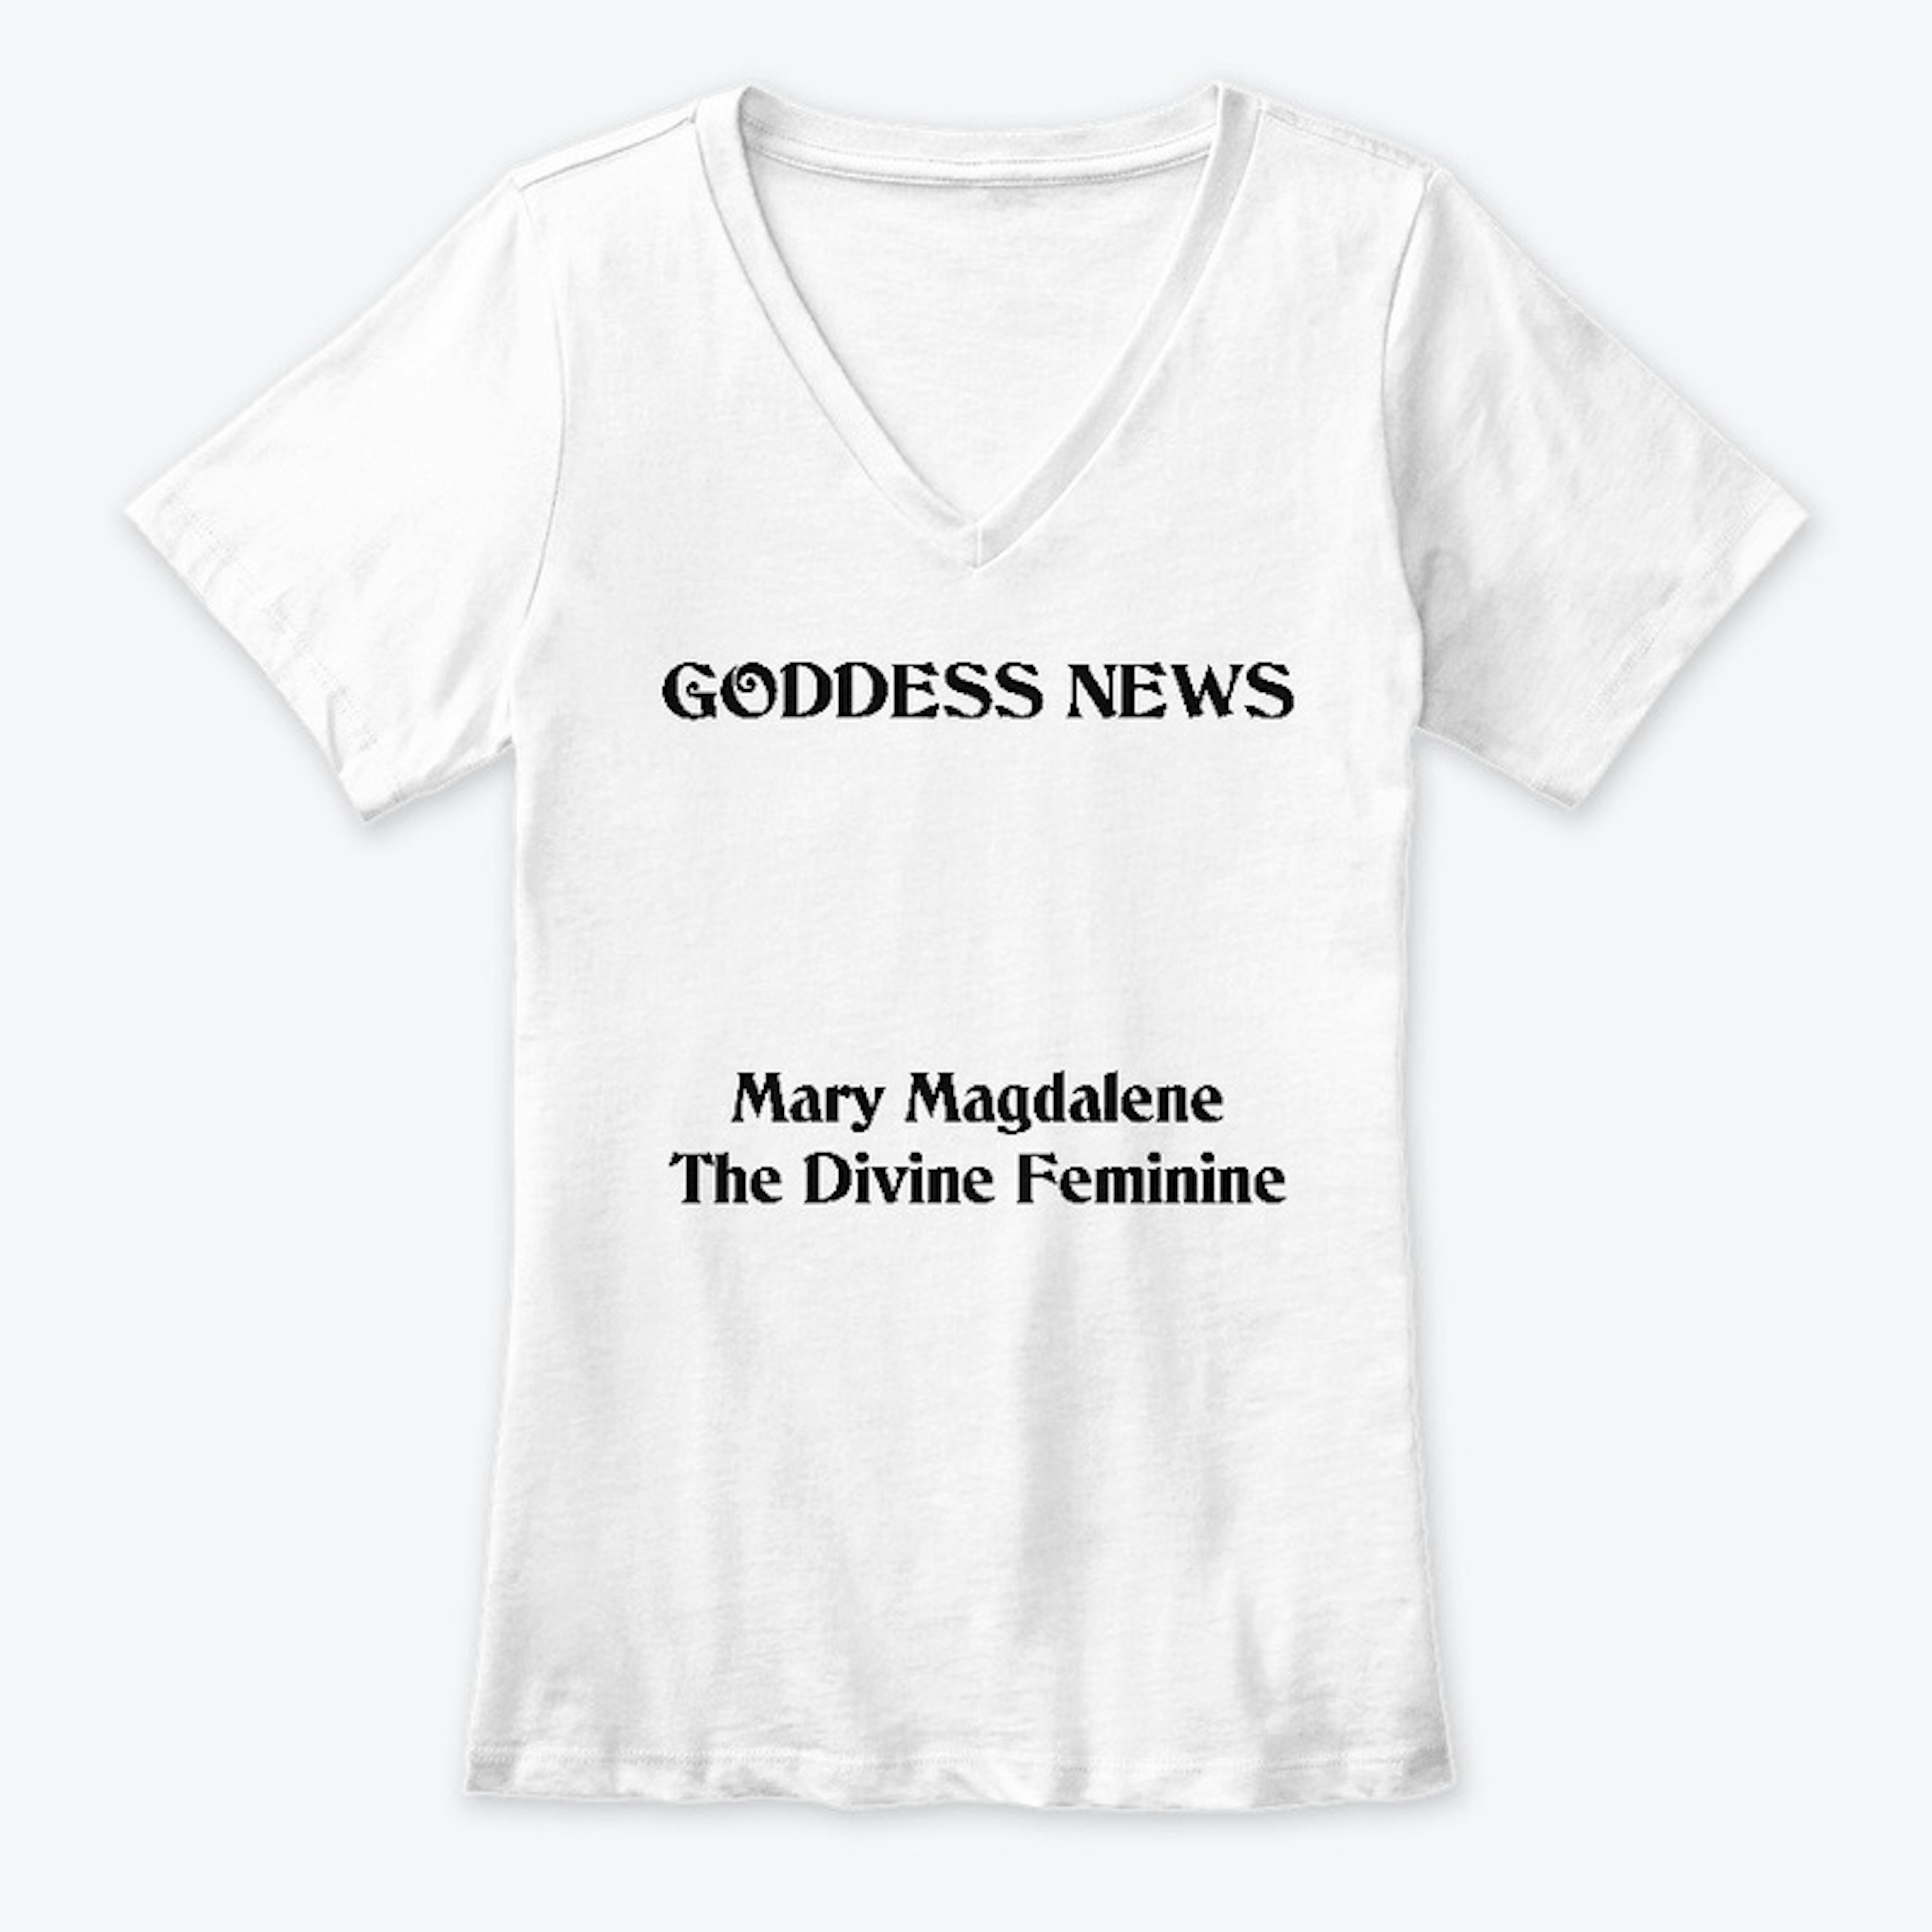 Mary Magdalene - The Divine Feminine